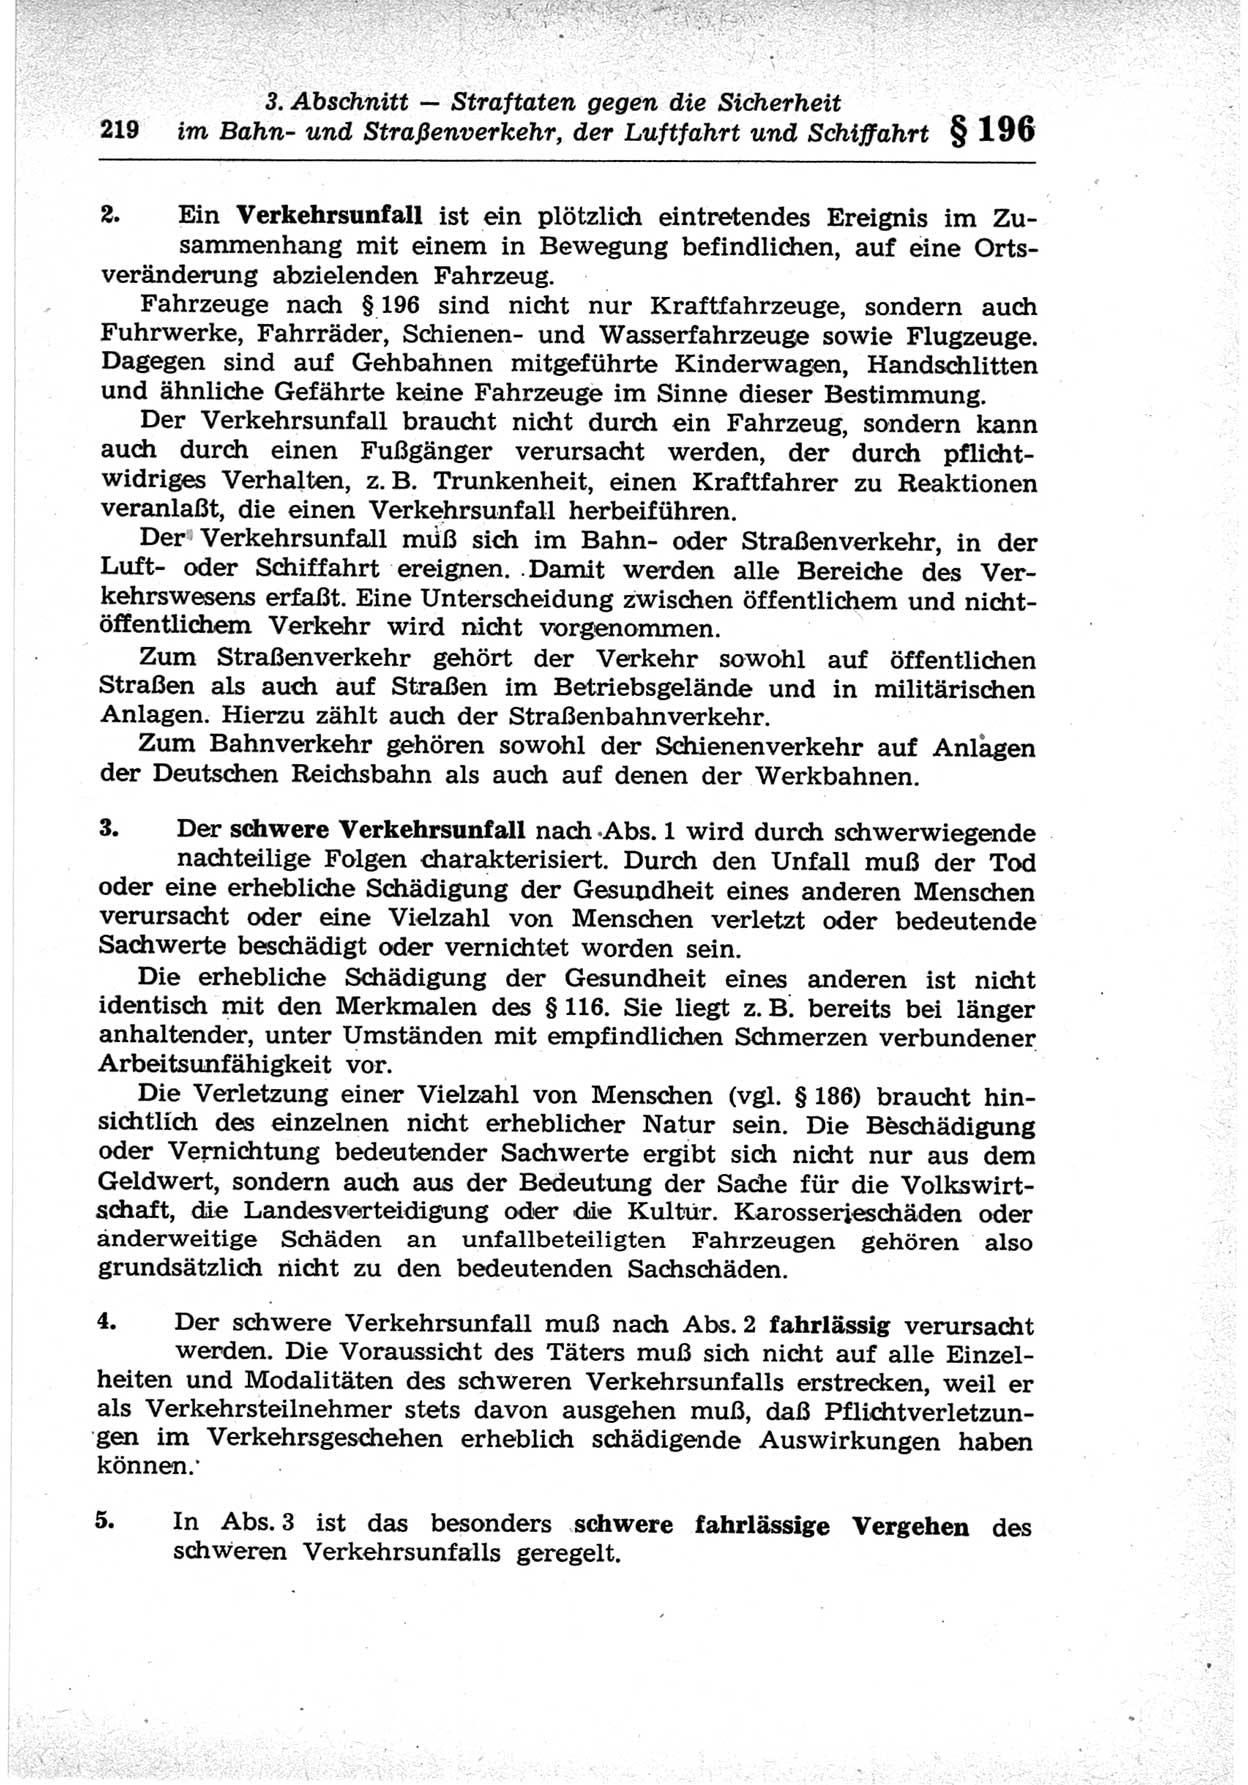 Strafrecht der Deutschen Demokratischen Republik (DDR), Lehrkommentar zum Strafgesetzbuch (StGB), Besonderer Teil 1969, Seite 219 (Strafr. DDR Lehrkomm. StGB BT 1969, S. 219)